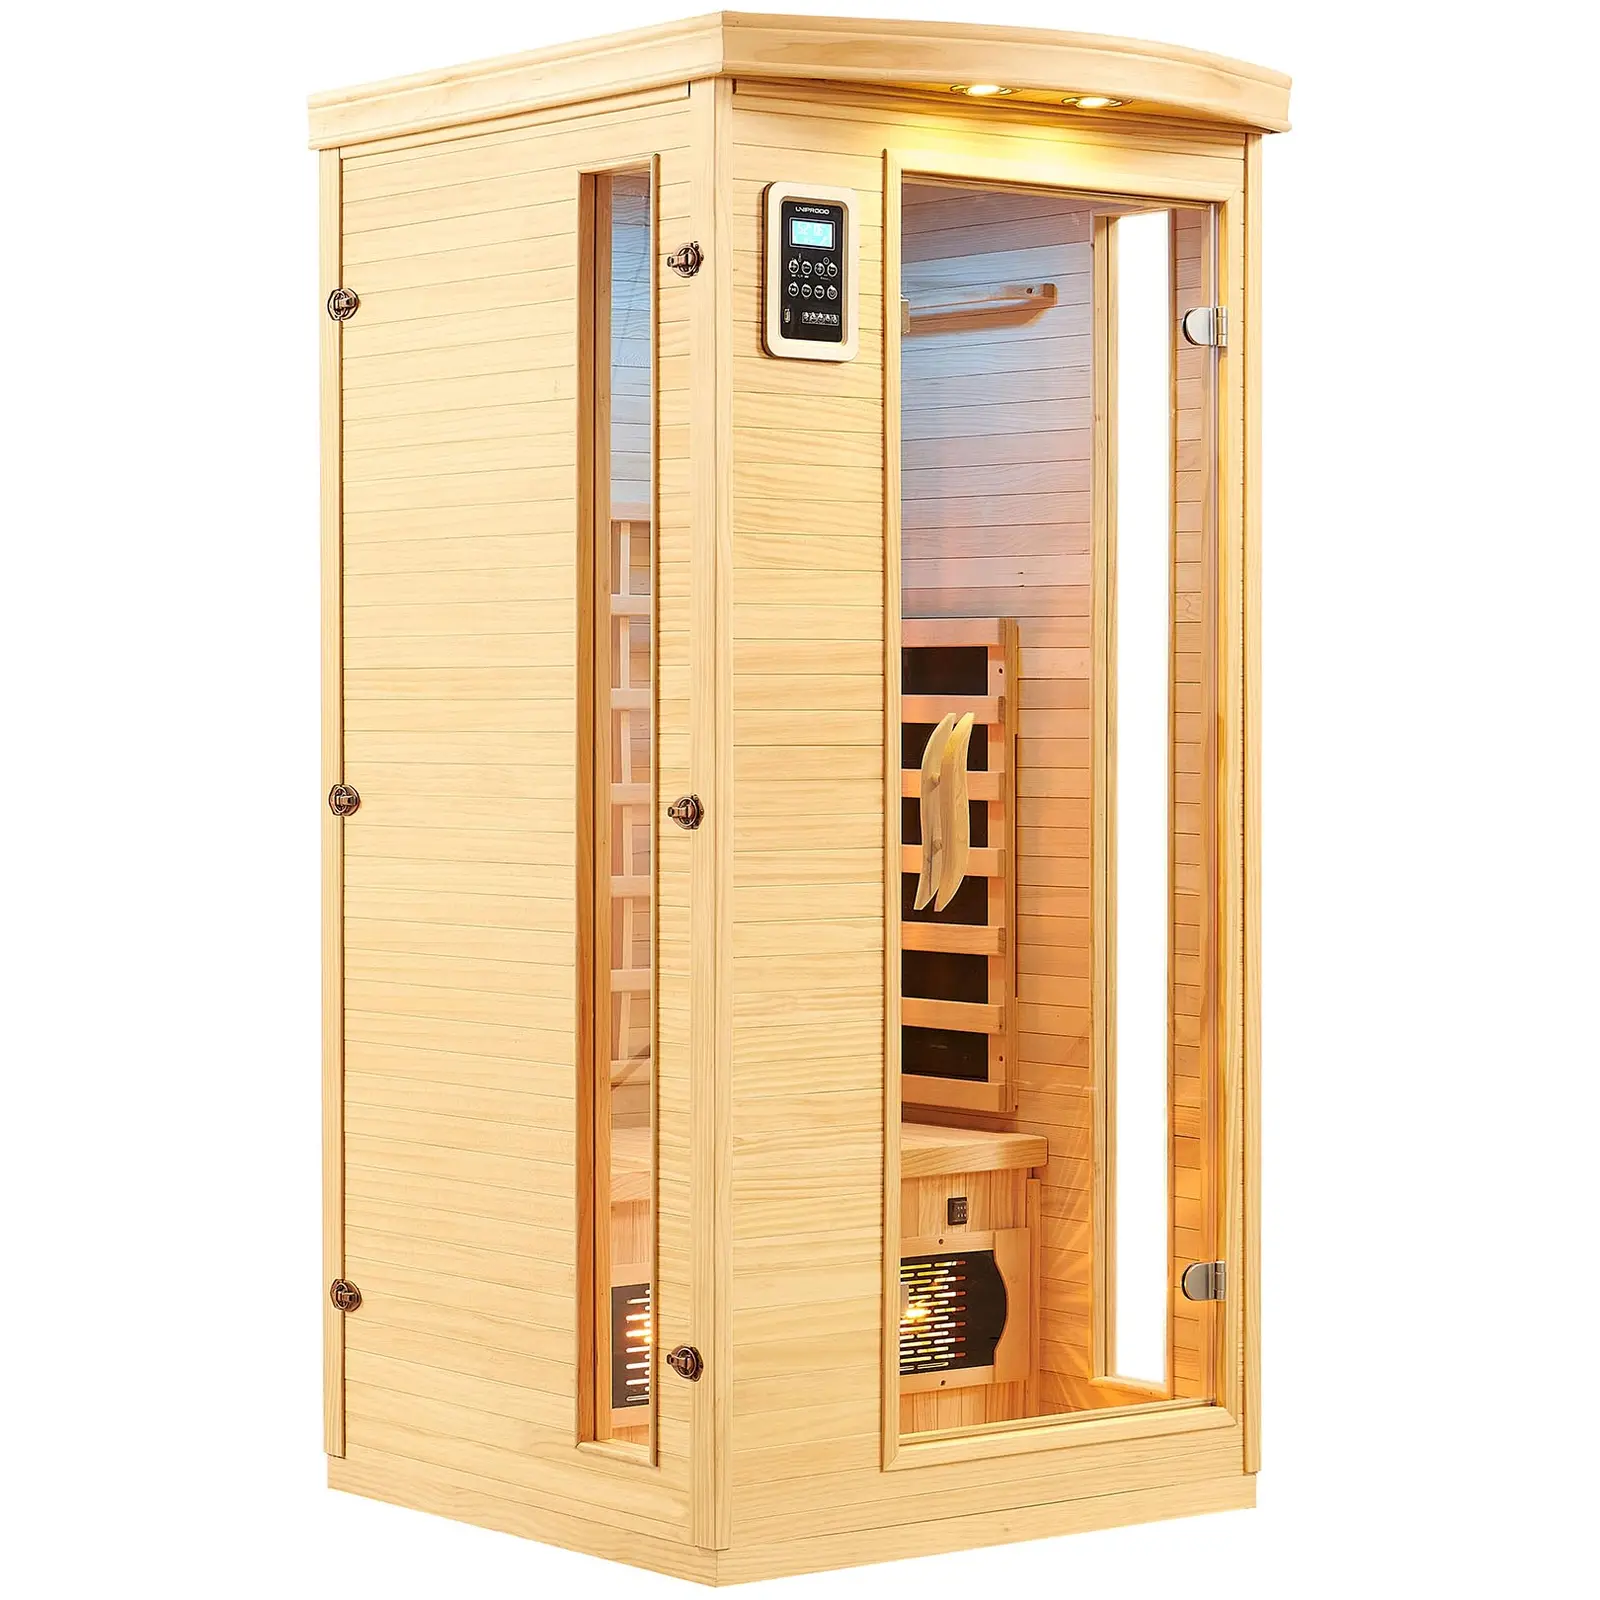 Cabina sauna a infrarossi - 3 emettitori a spettro completo - 1 persona - 1.450 W - 18 - 60 °C